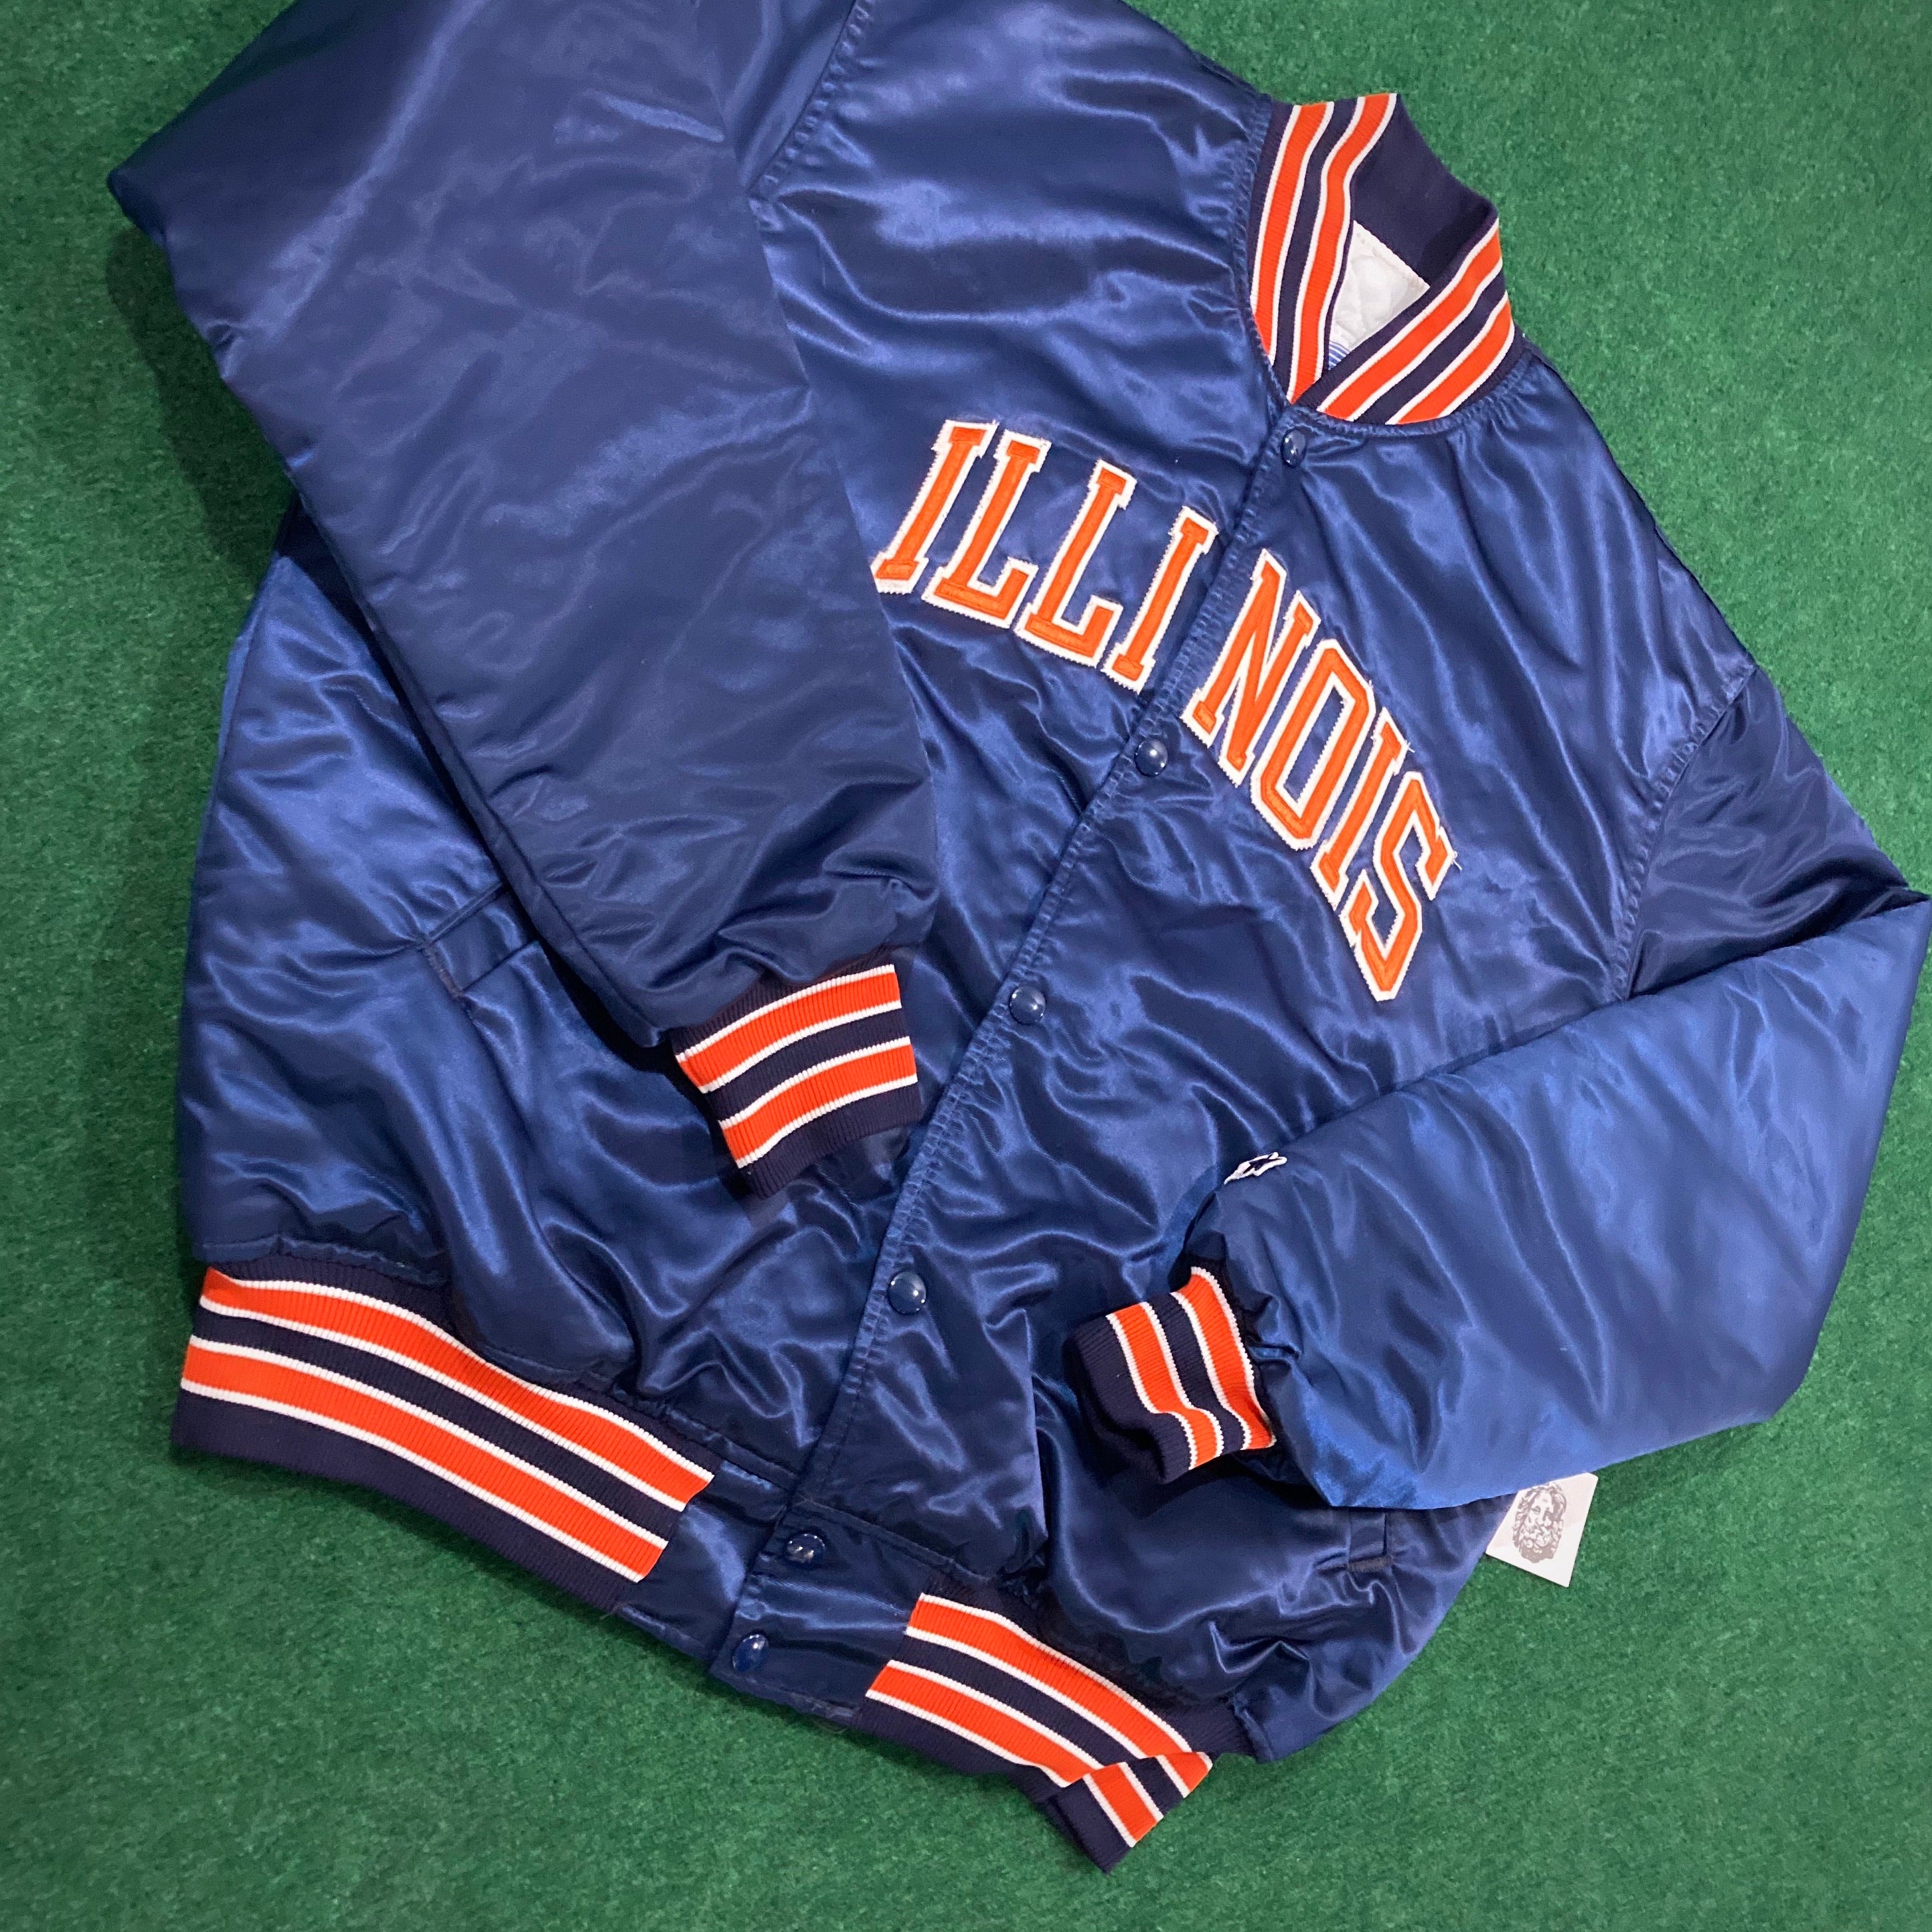 Vintage University of Illinois Starter Jacket